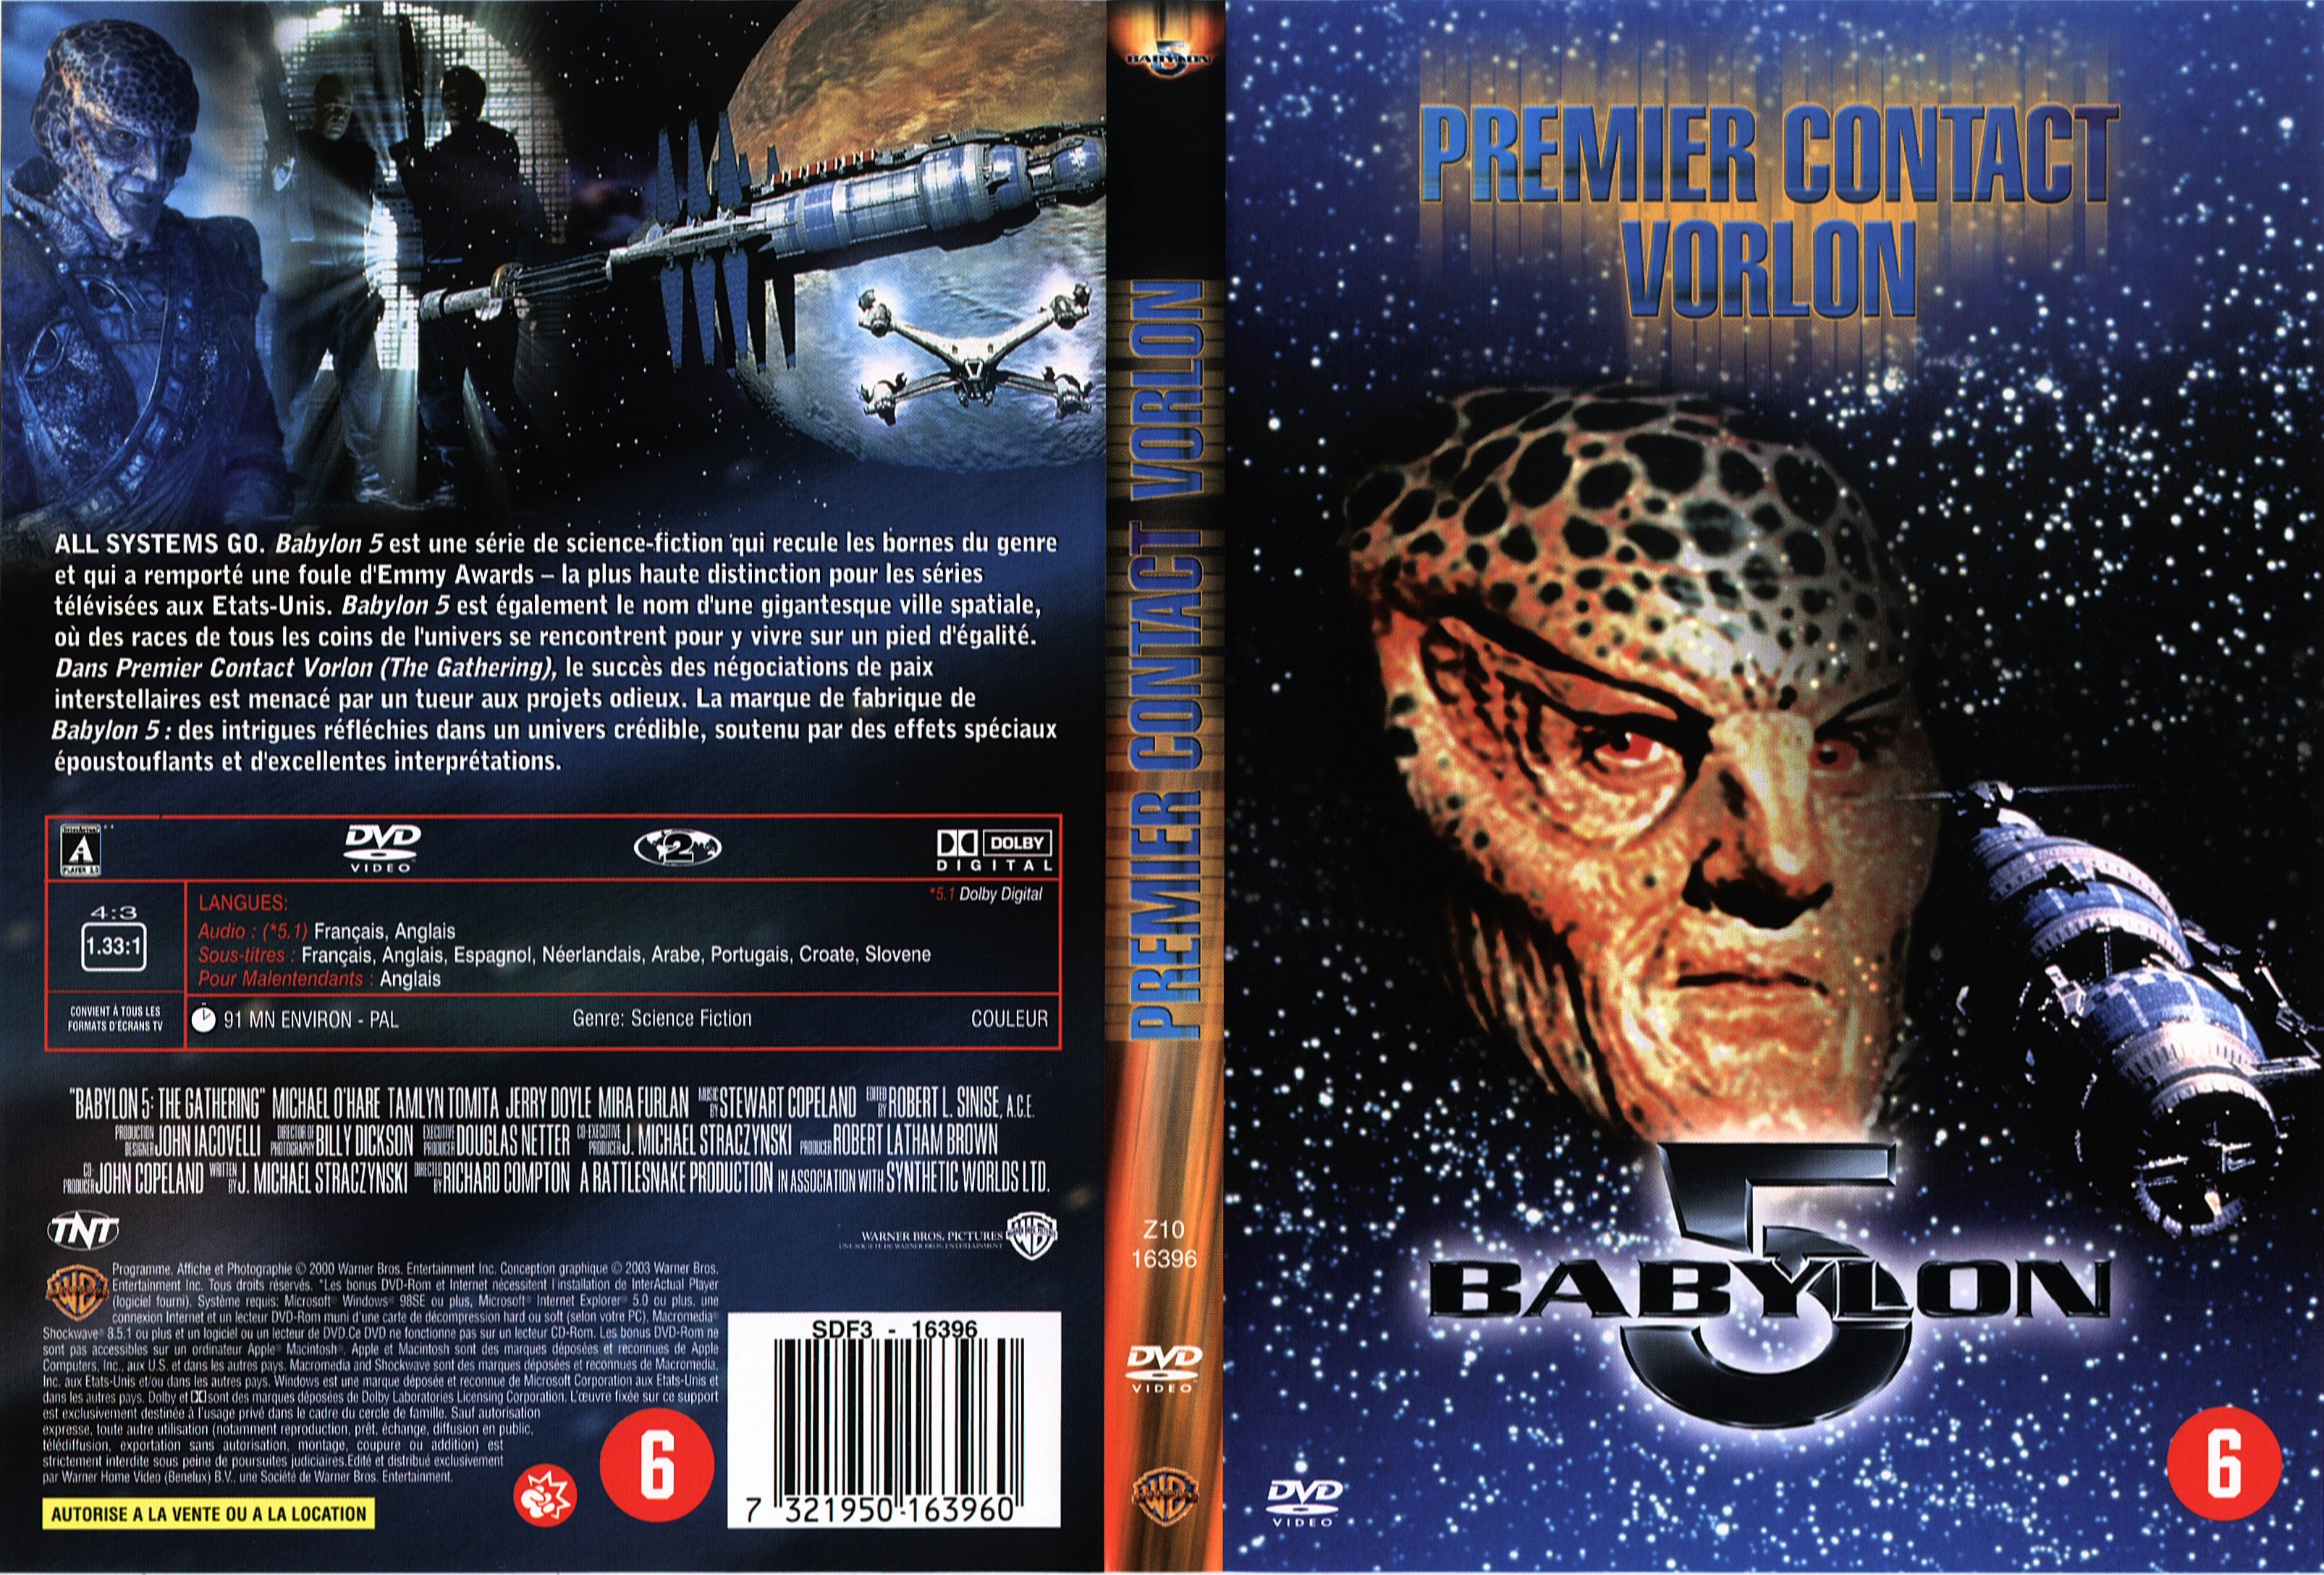 Jaquette DVD Babylon 5 premier contact Vorlon